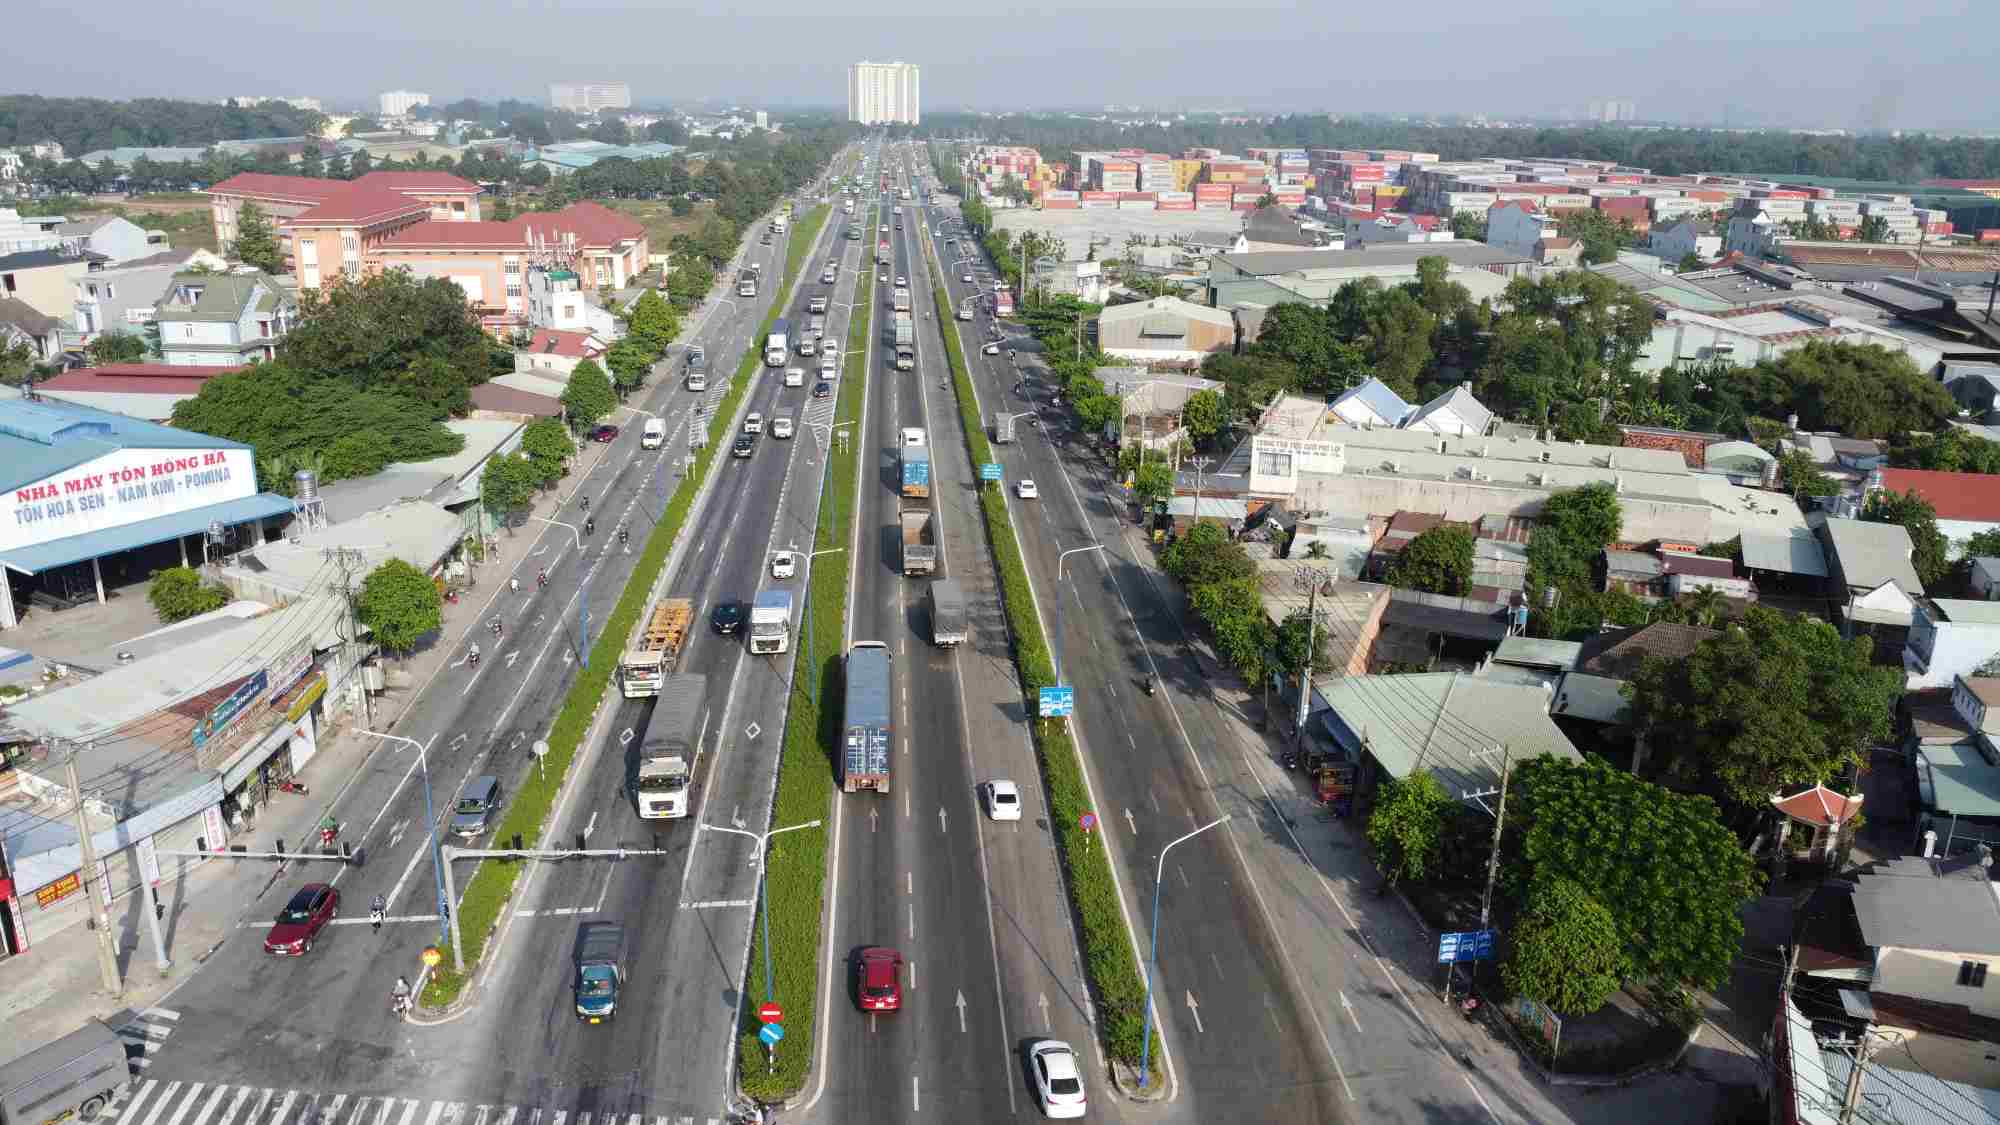 UBND tỉnh Bình Dương cho biết, hiện tỉnh đang triển khai dự án Cải tạo hạ tầng giao thông công cộng tại Bình Dương.